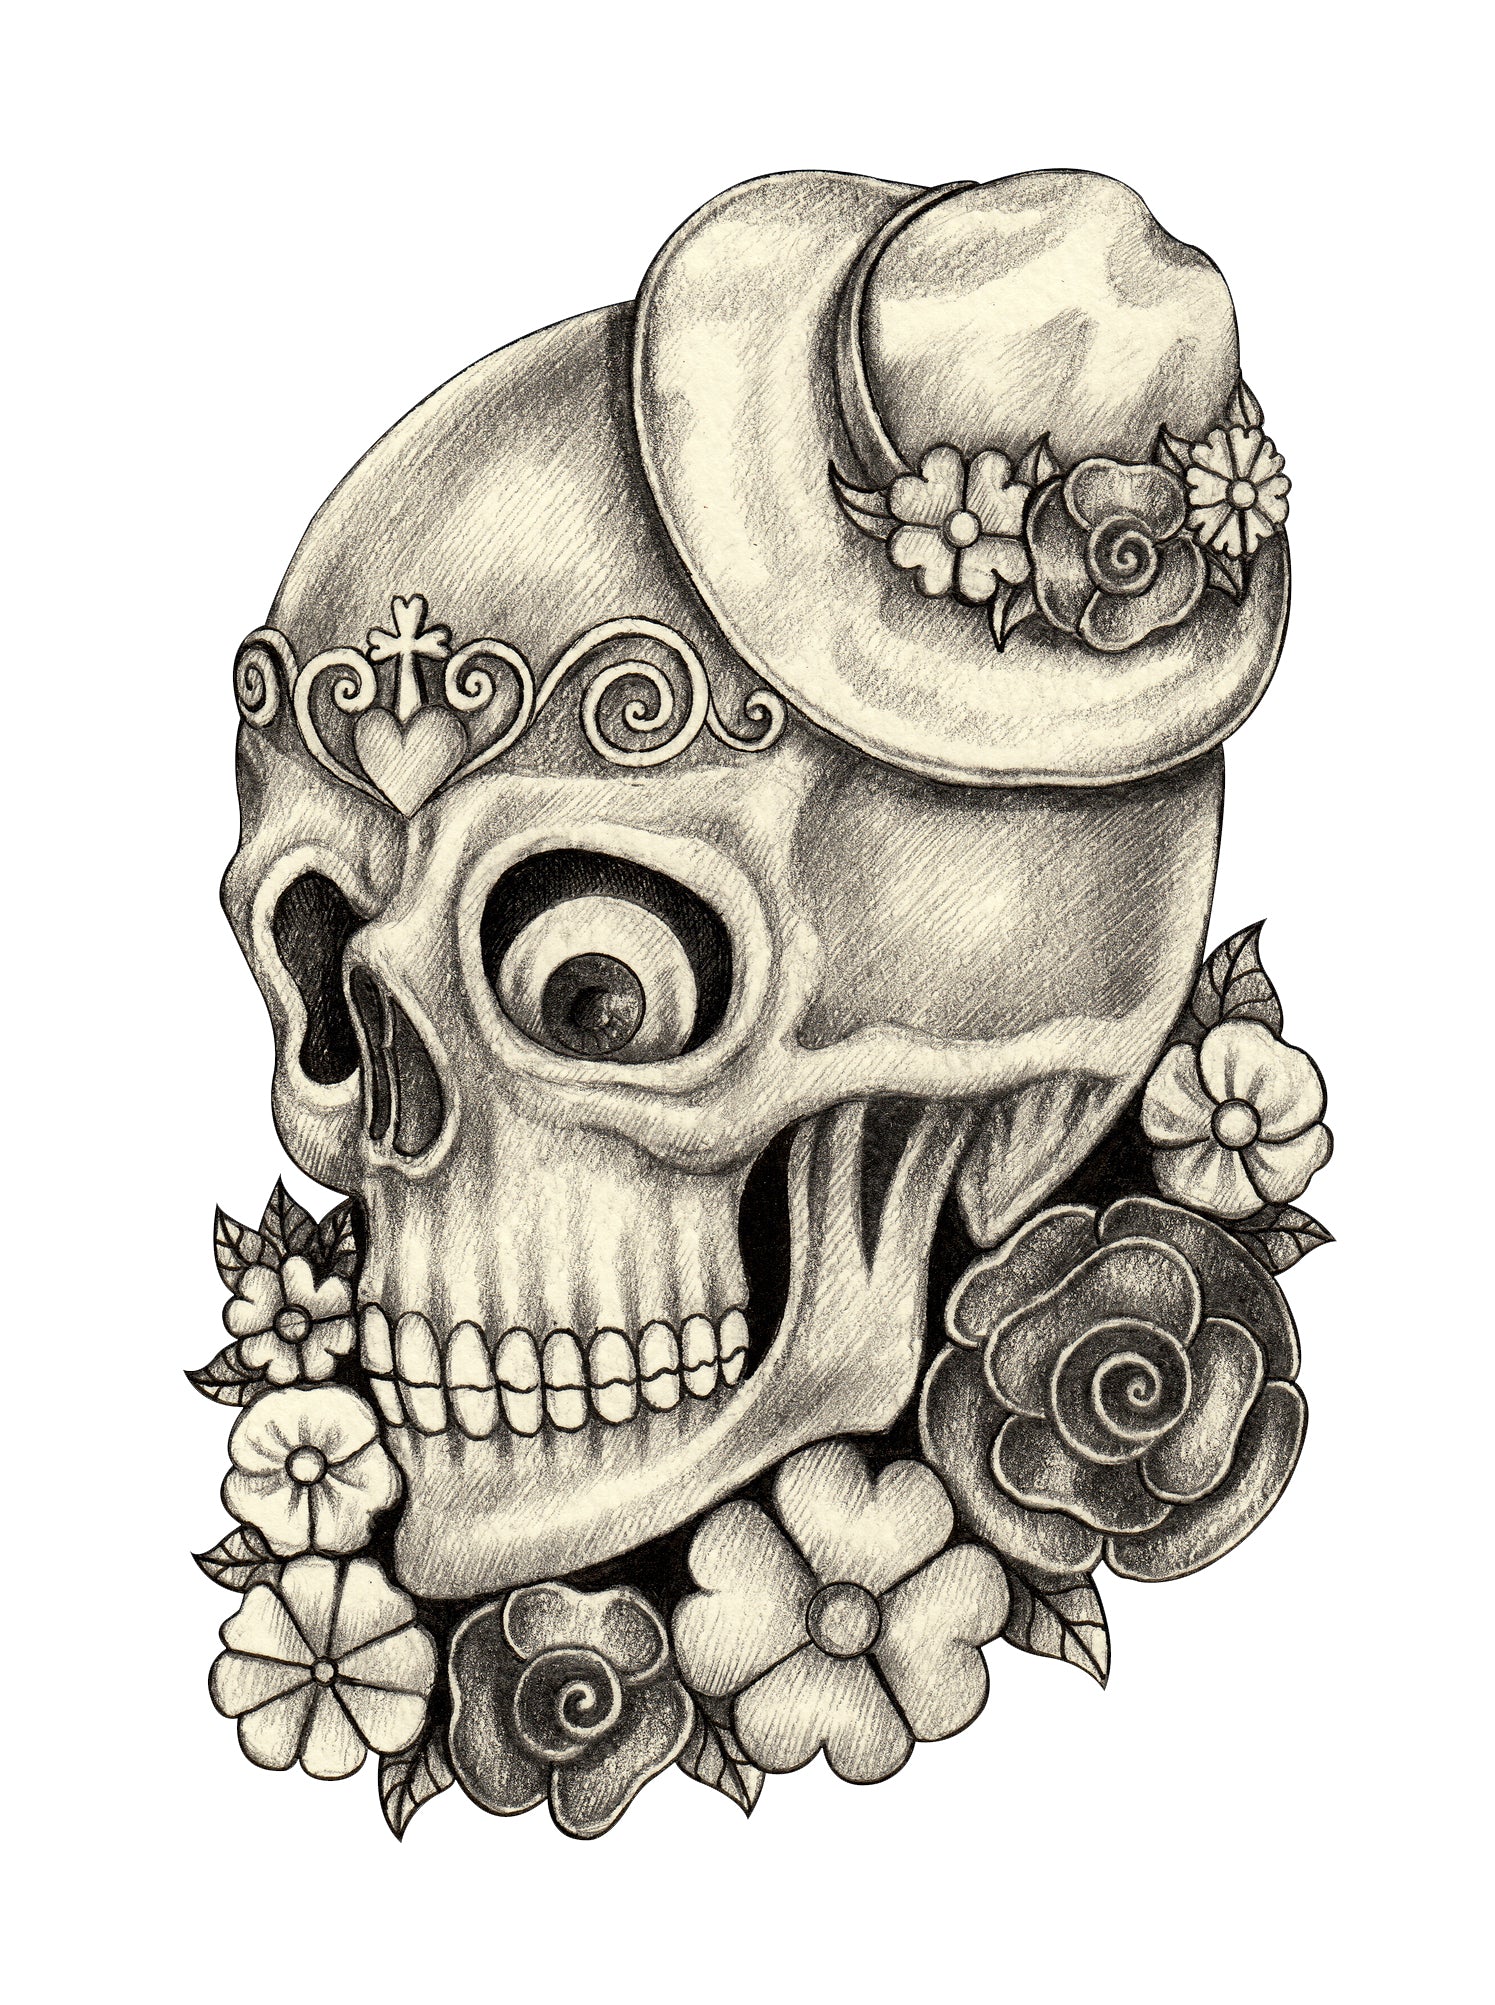 Pencil Sketch Floral Dia de los Muertos Skull with Hat #2 Vinyl Decal Sticker